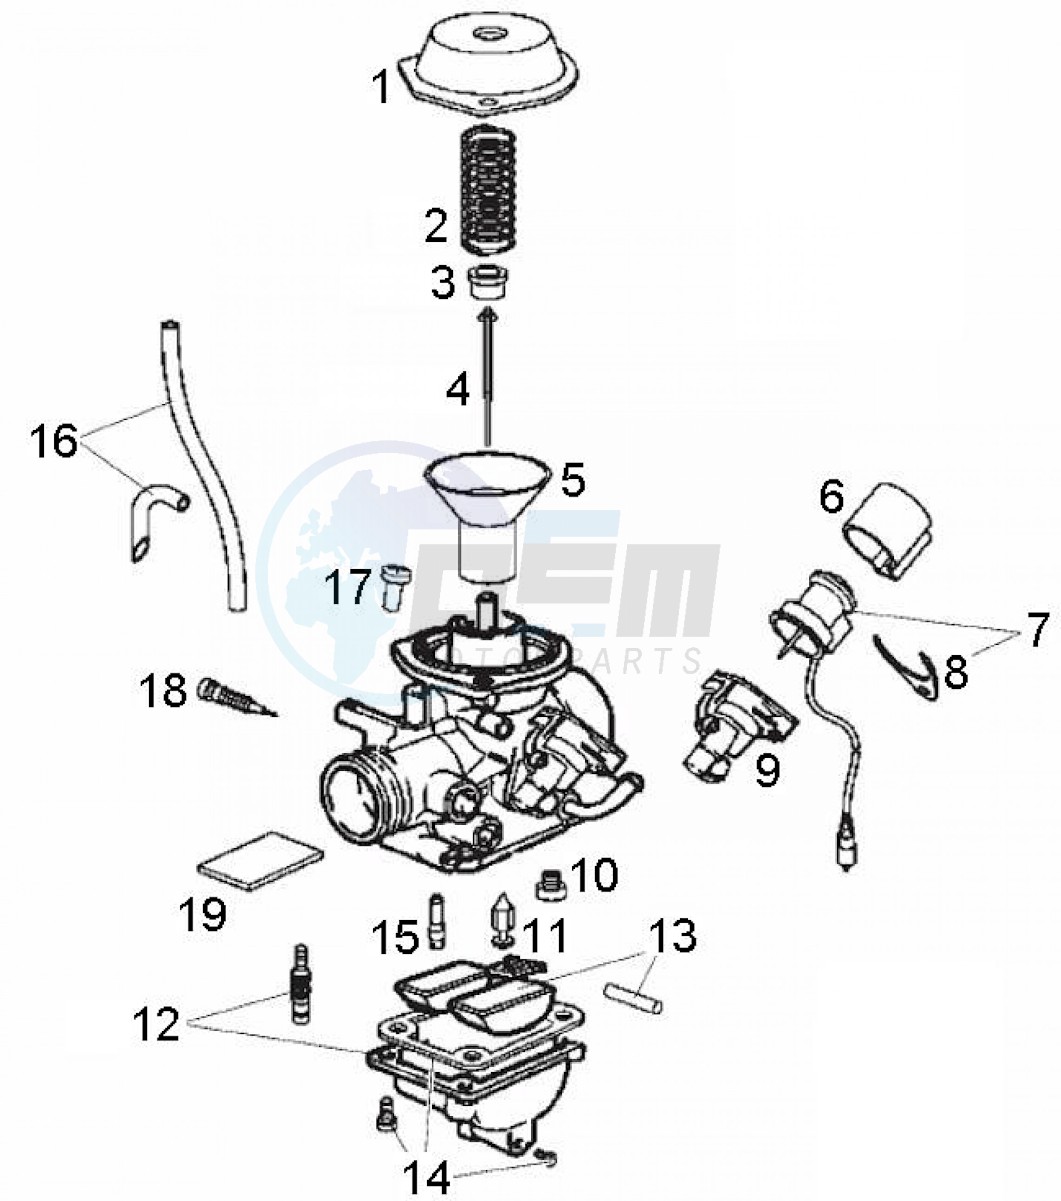 Carburetor components (Positions) blueprint